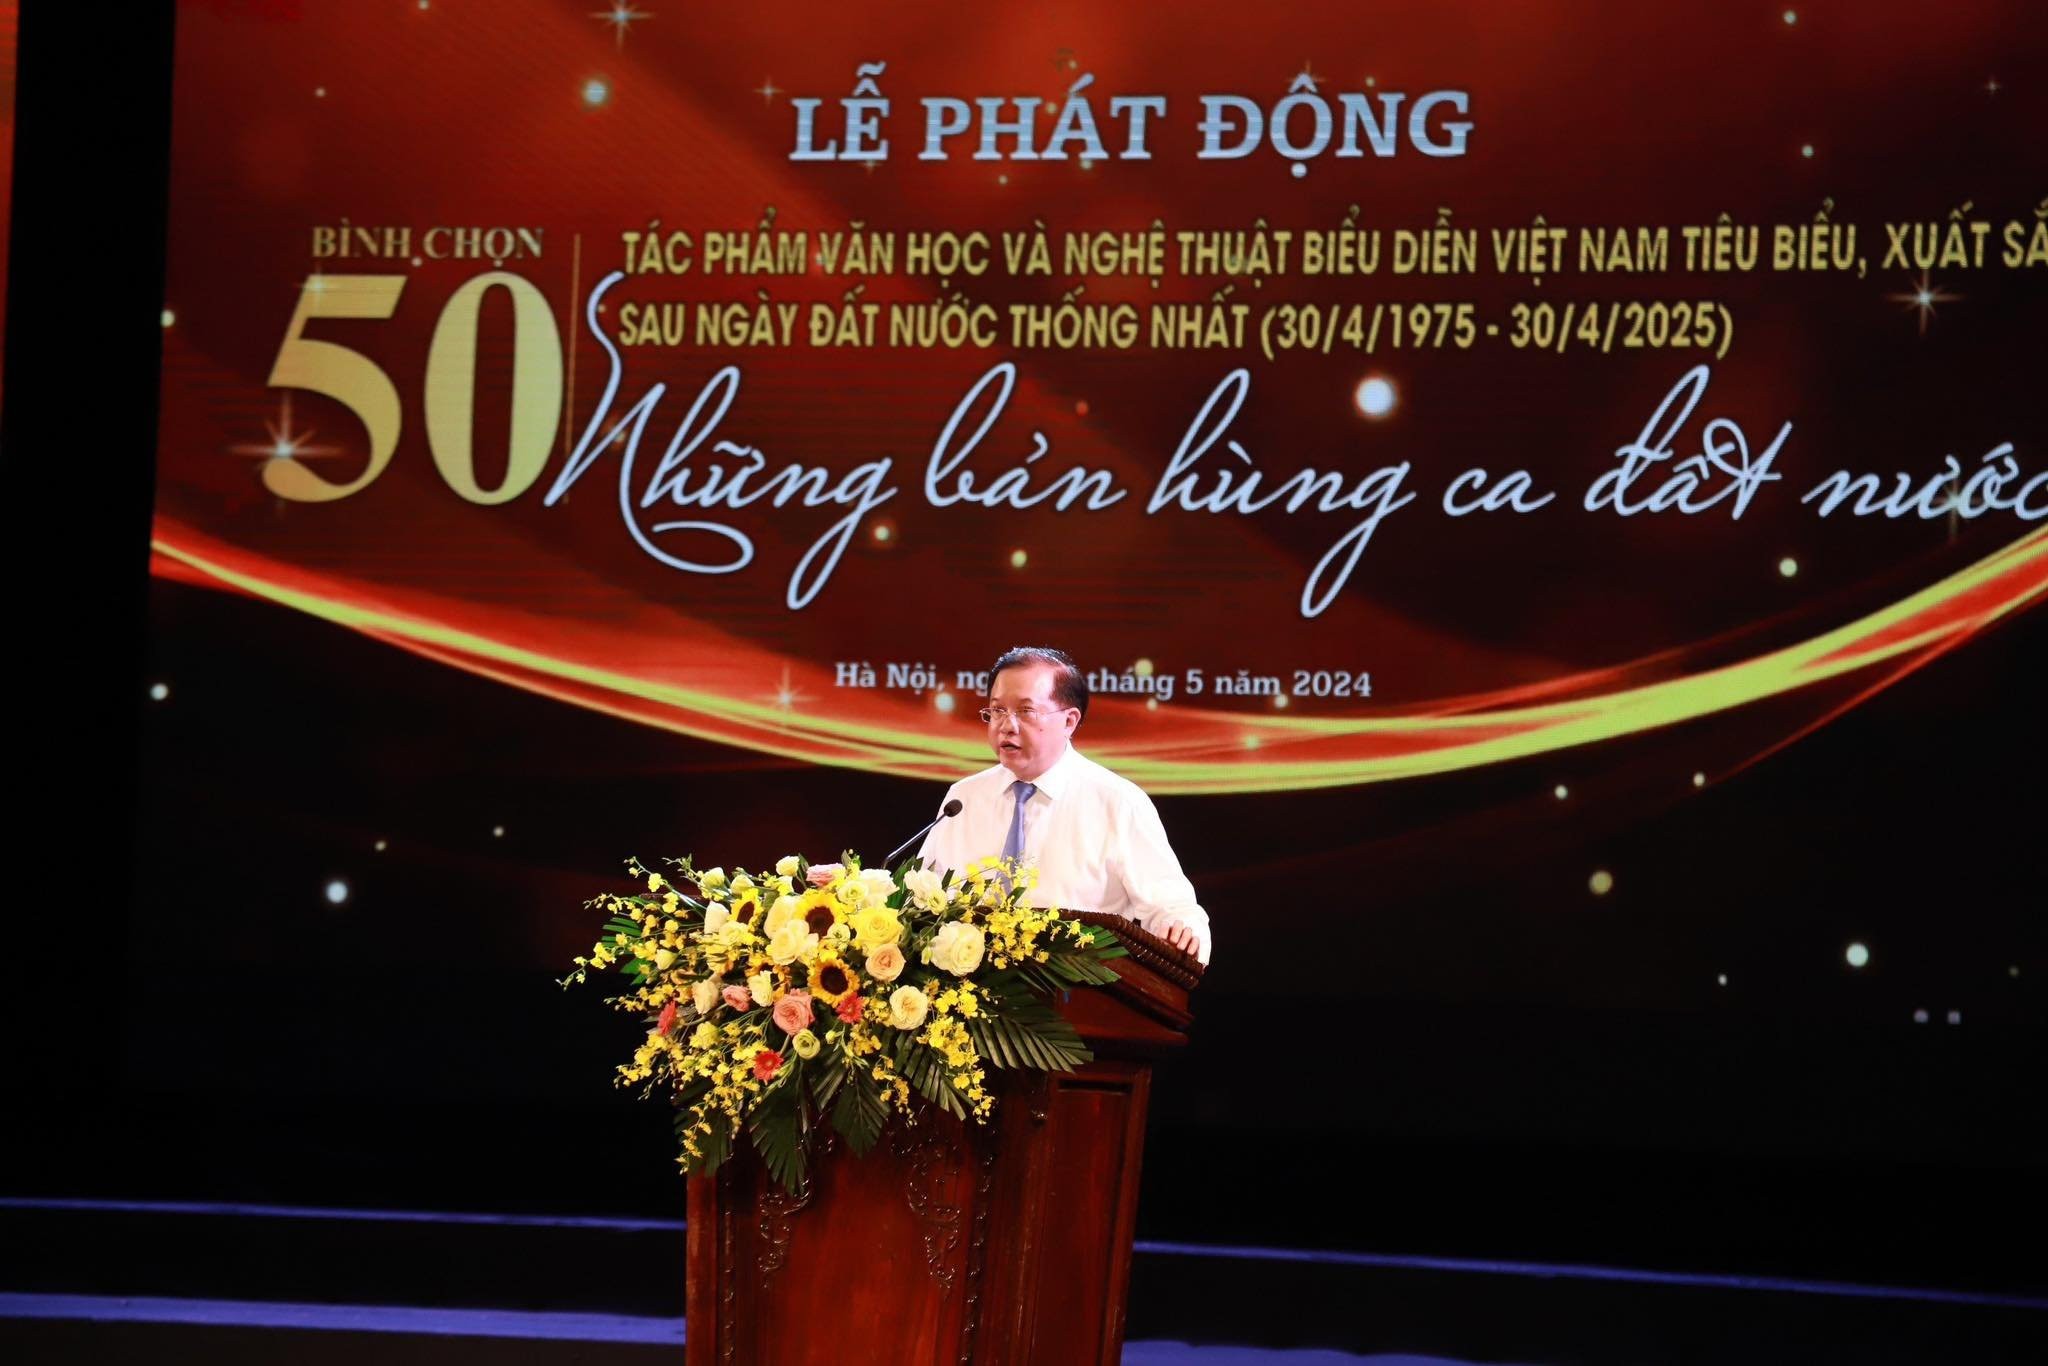 Bình chọn 50 tác phẩm văn học, nghệ thuật biểu diễn Việt Nam tiêu biểu